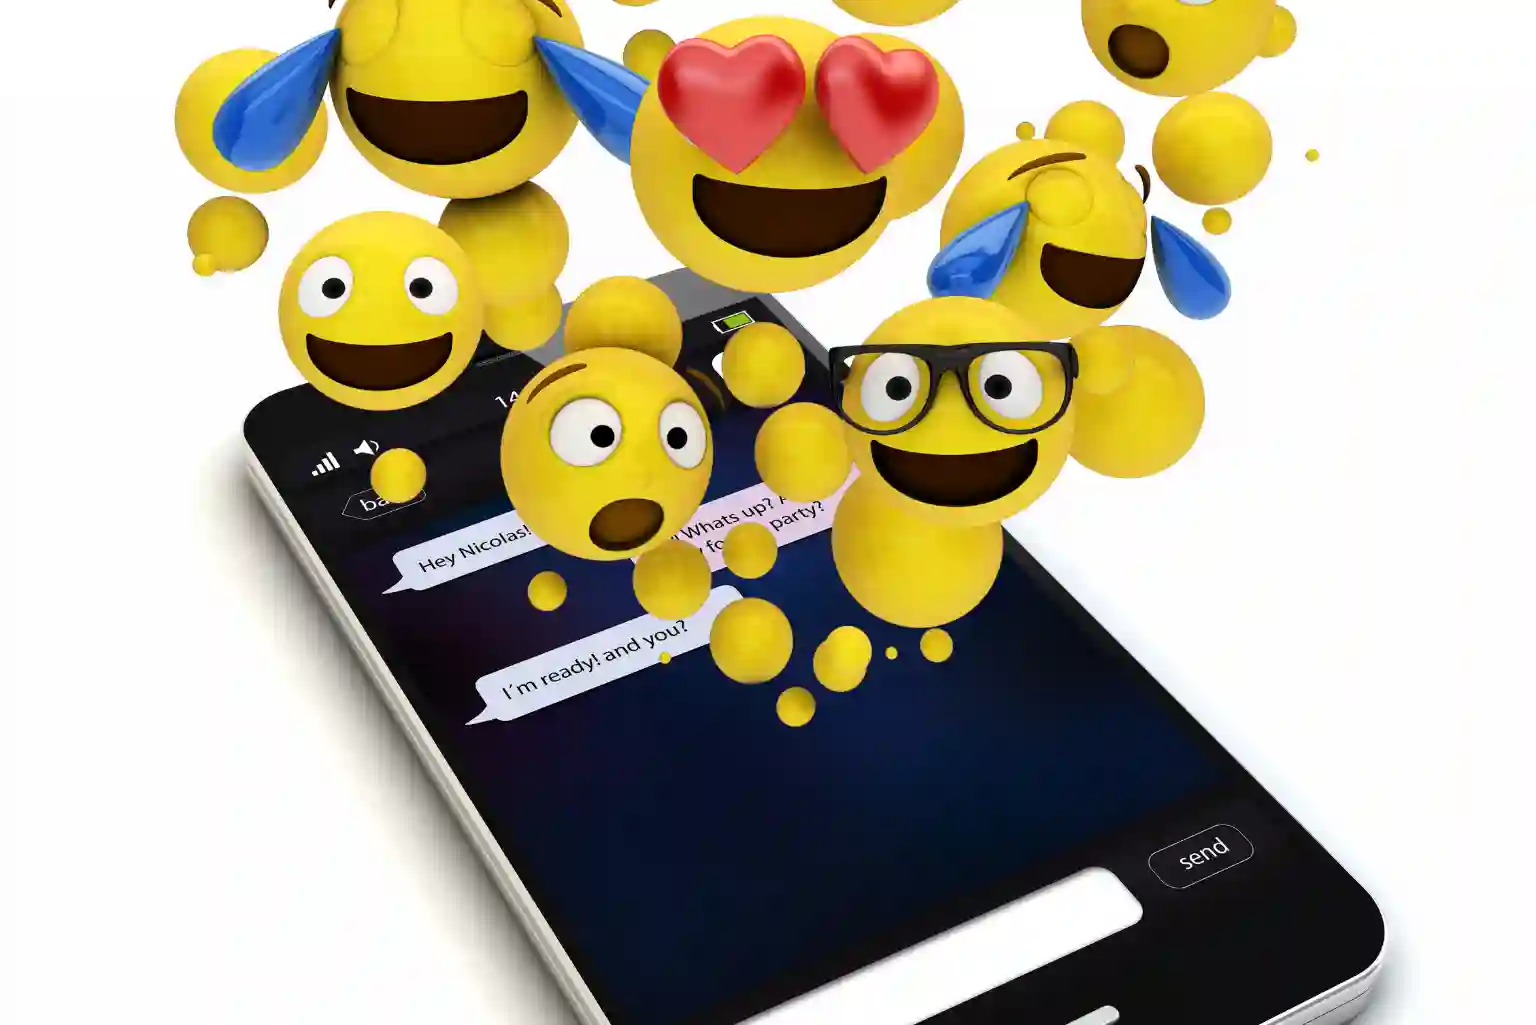 Manfaatkan emoji pada social media agar berkesan fun.